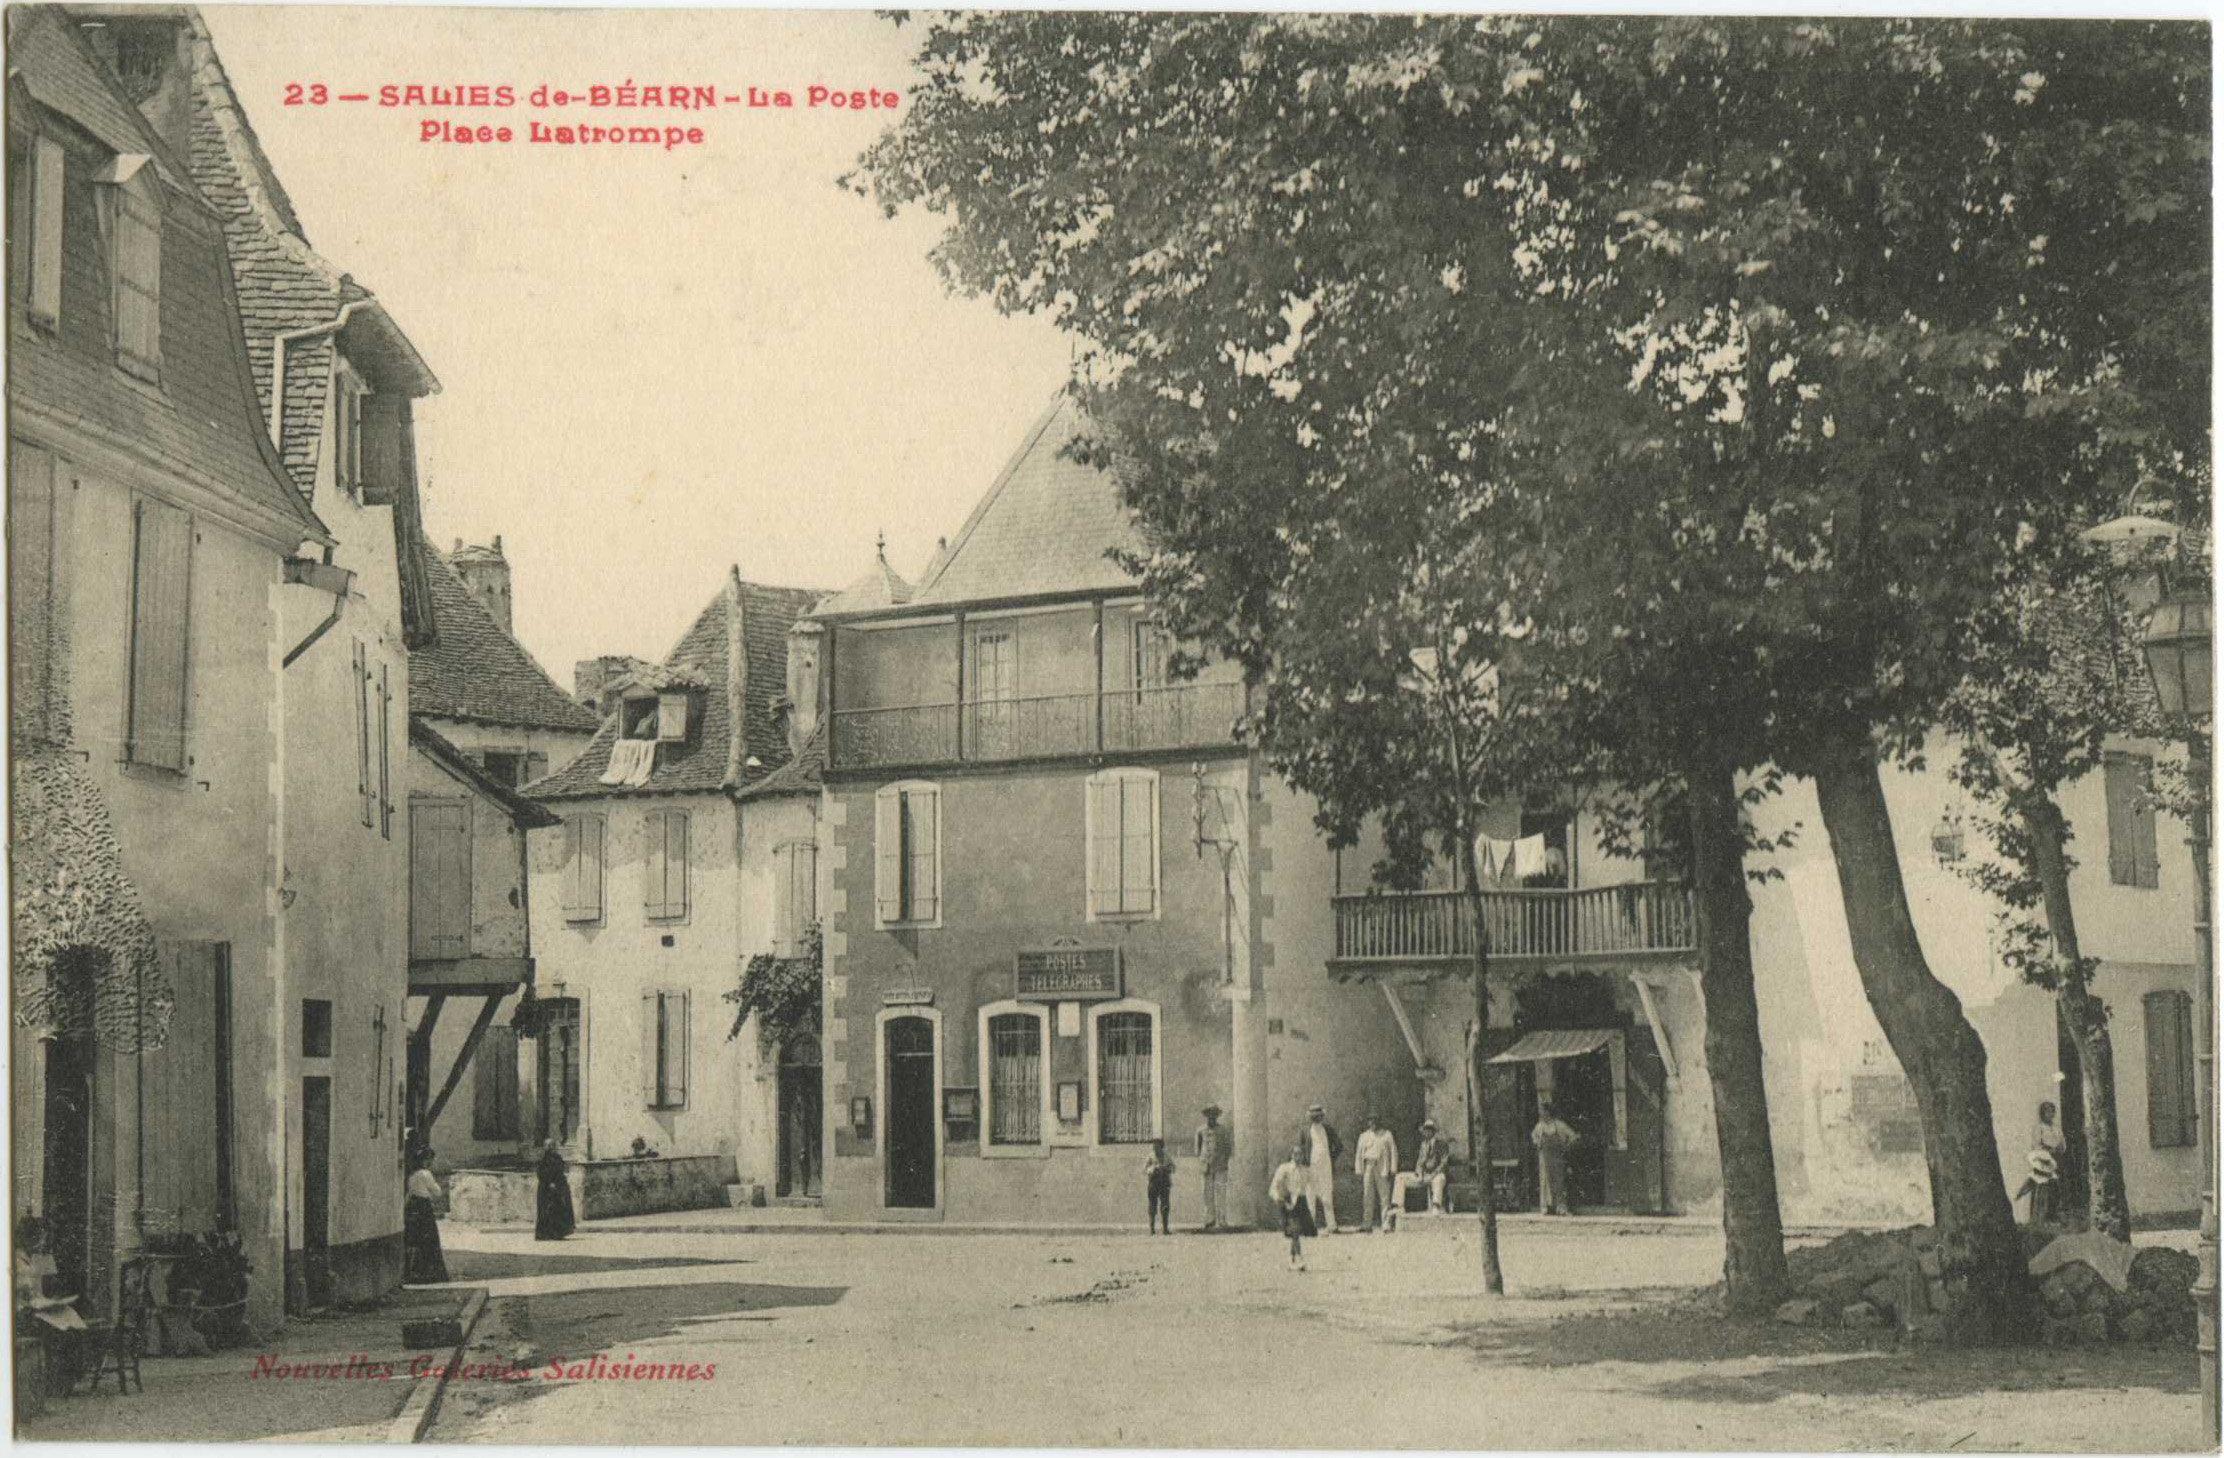 Salies-de-Béarn - La Poste - Place Latrompe